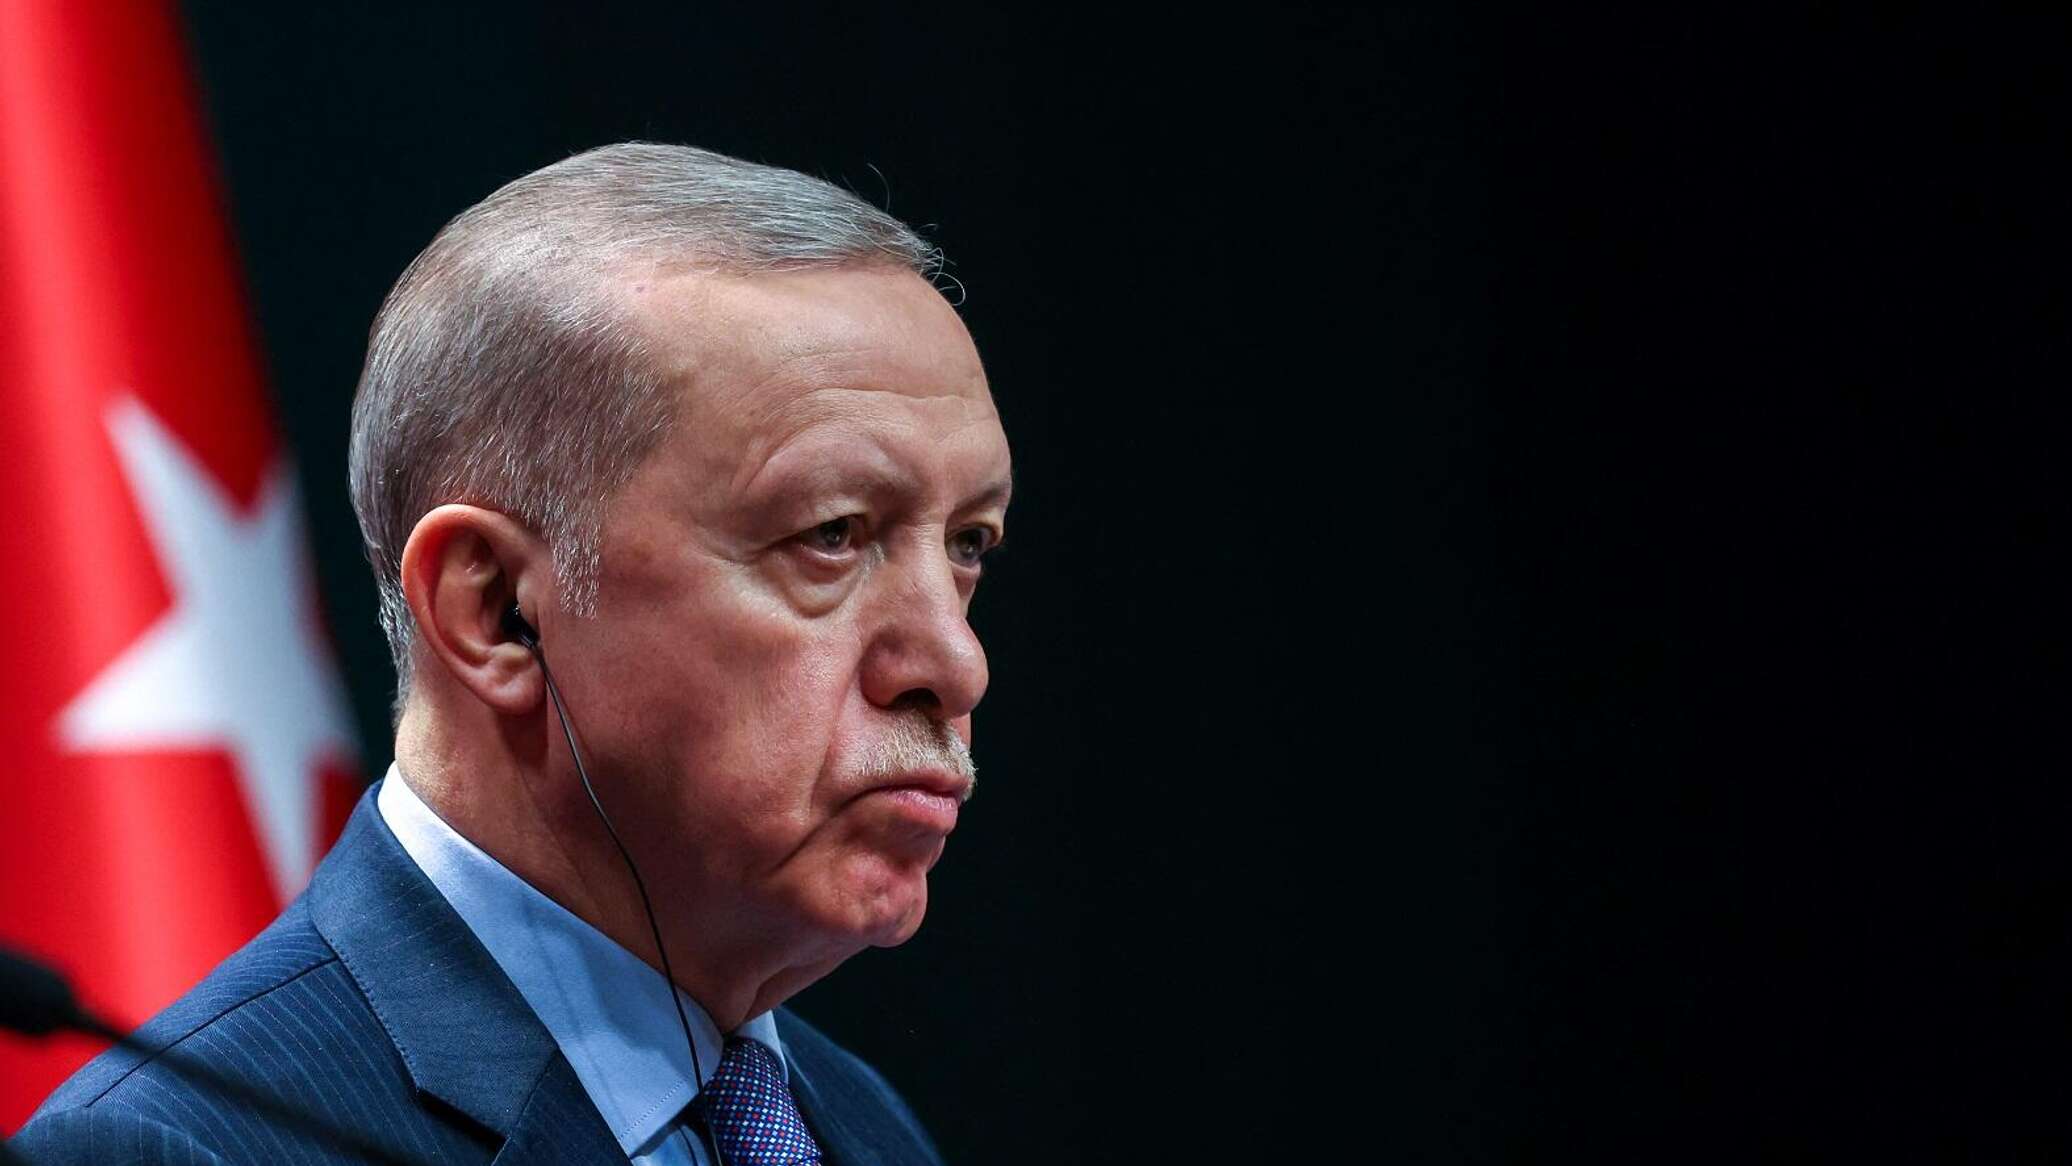 هل تنجح زيارة أردوغان في إنهاء ملف "حزب العمال الكردستاني" مع العراق؟